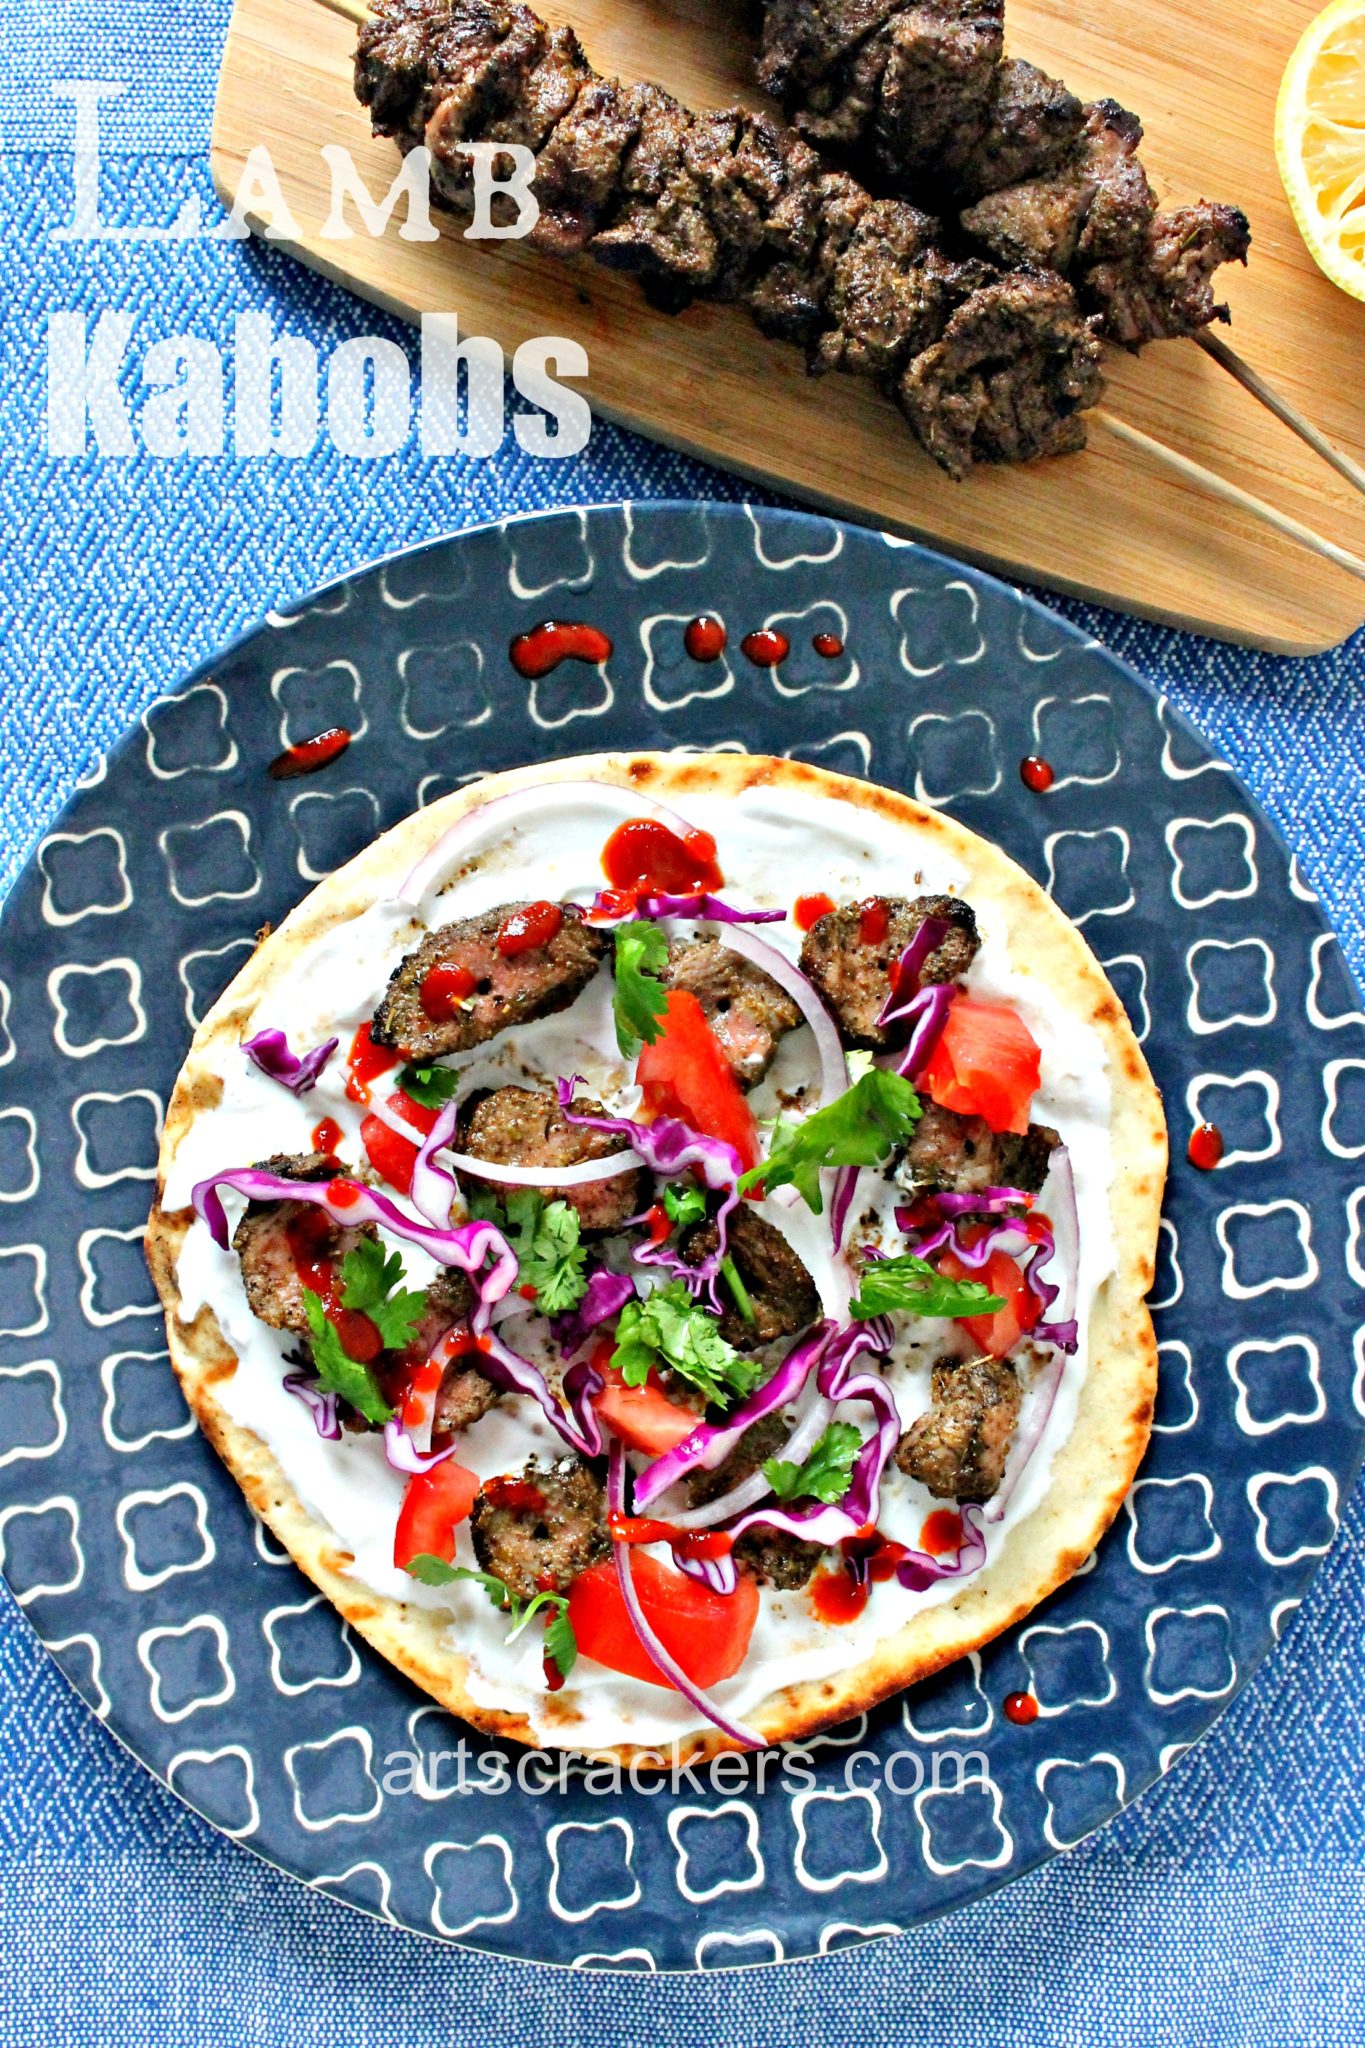 Parragon Books Ultimate BBQ Cookbook Lamb Kabobs